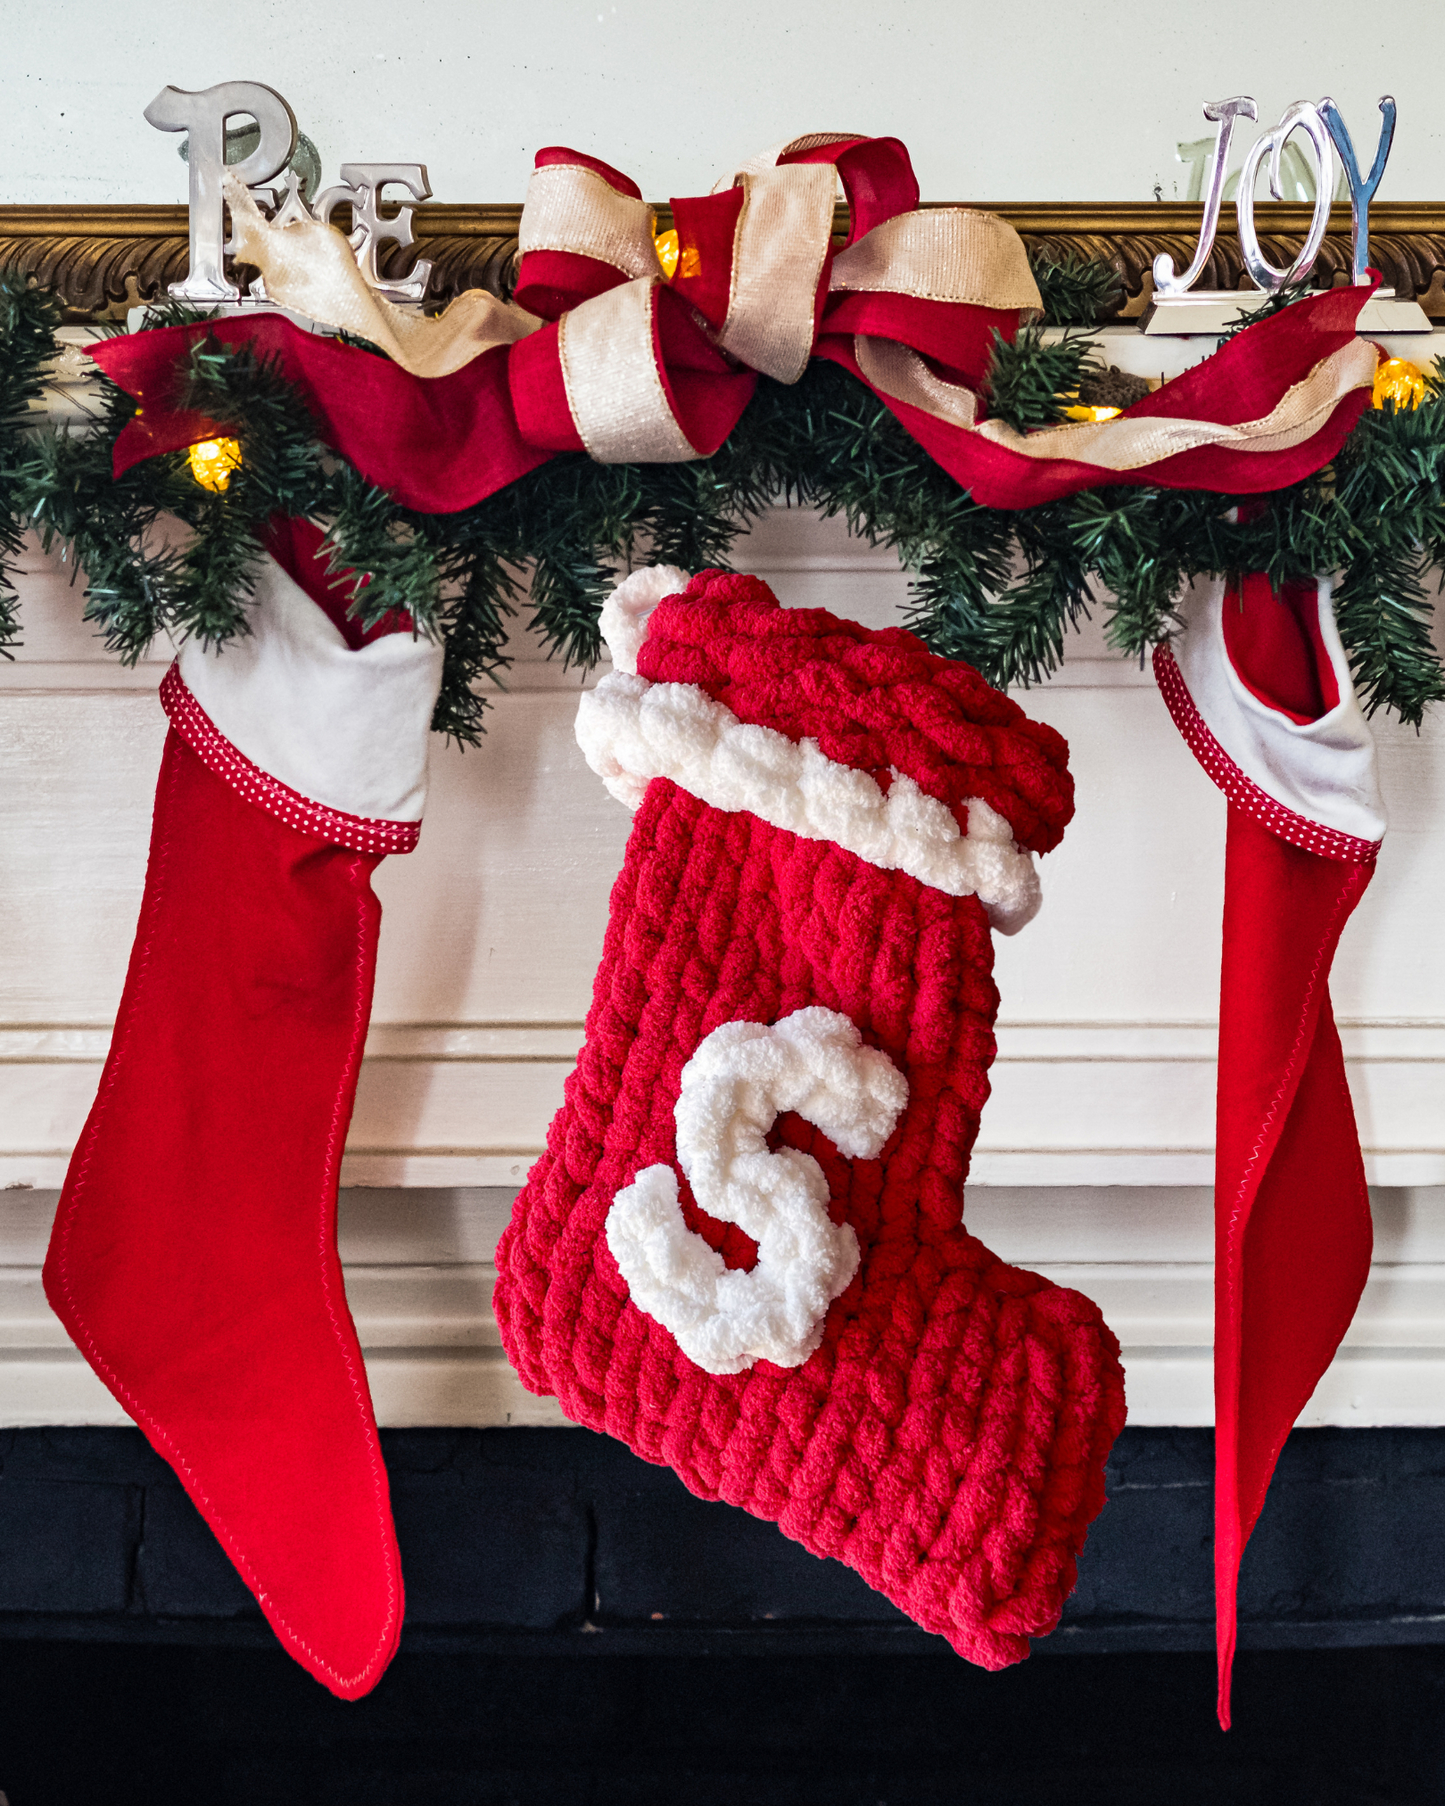 Monogram Christmas Handknit Yarn Stocking - Red and white 17”